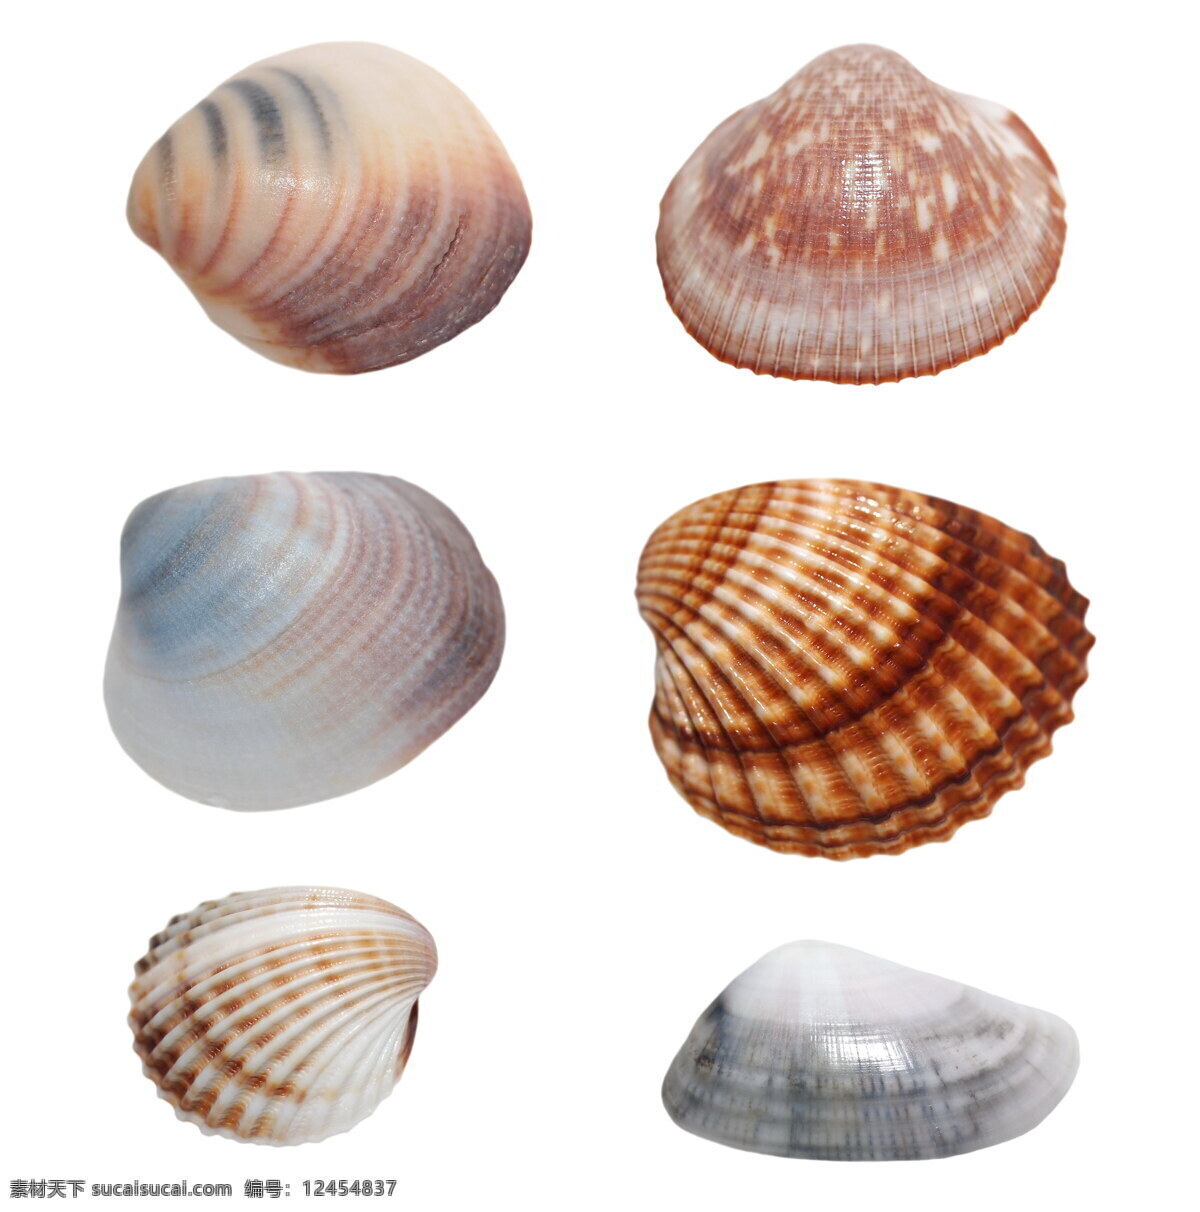 贝壳 标本 海洋生物 背景 海螺 外壳 生物世界 生活用品 生活百科